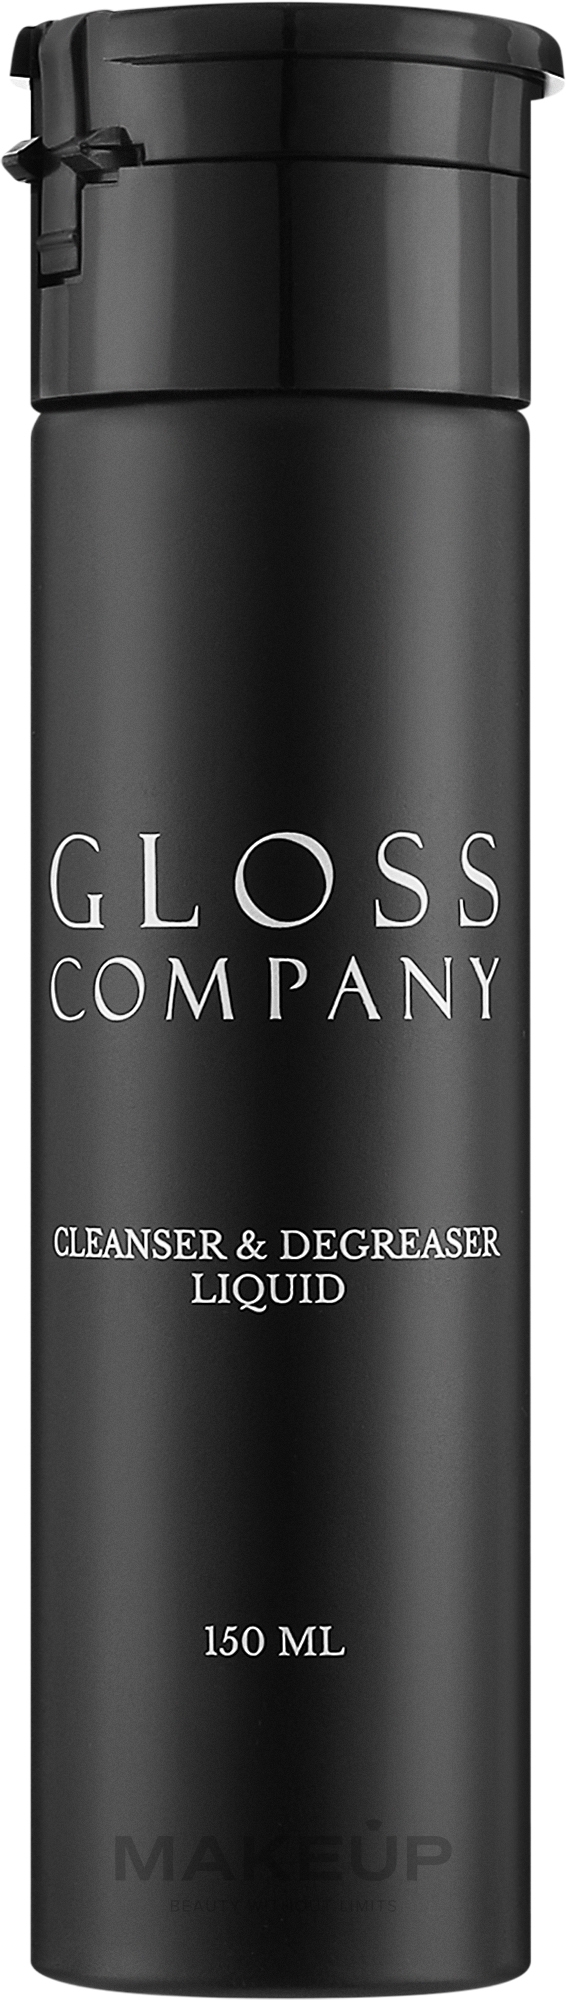 Клинсер 2 в 1 для ногтей - Gloss Company Cleanser & Degreaser Liquid  — фото Clear